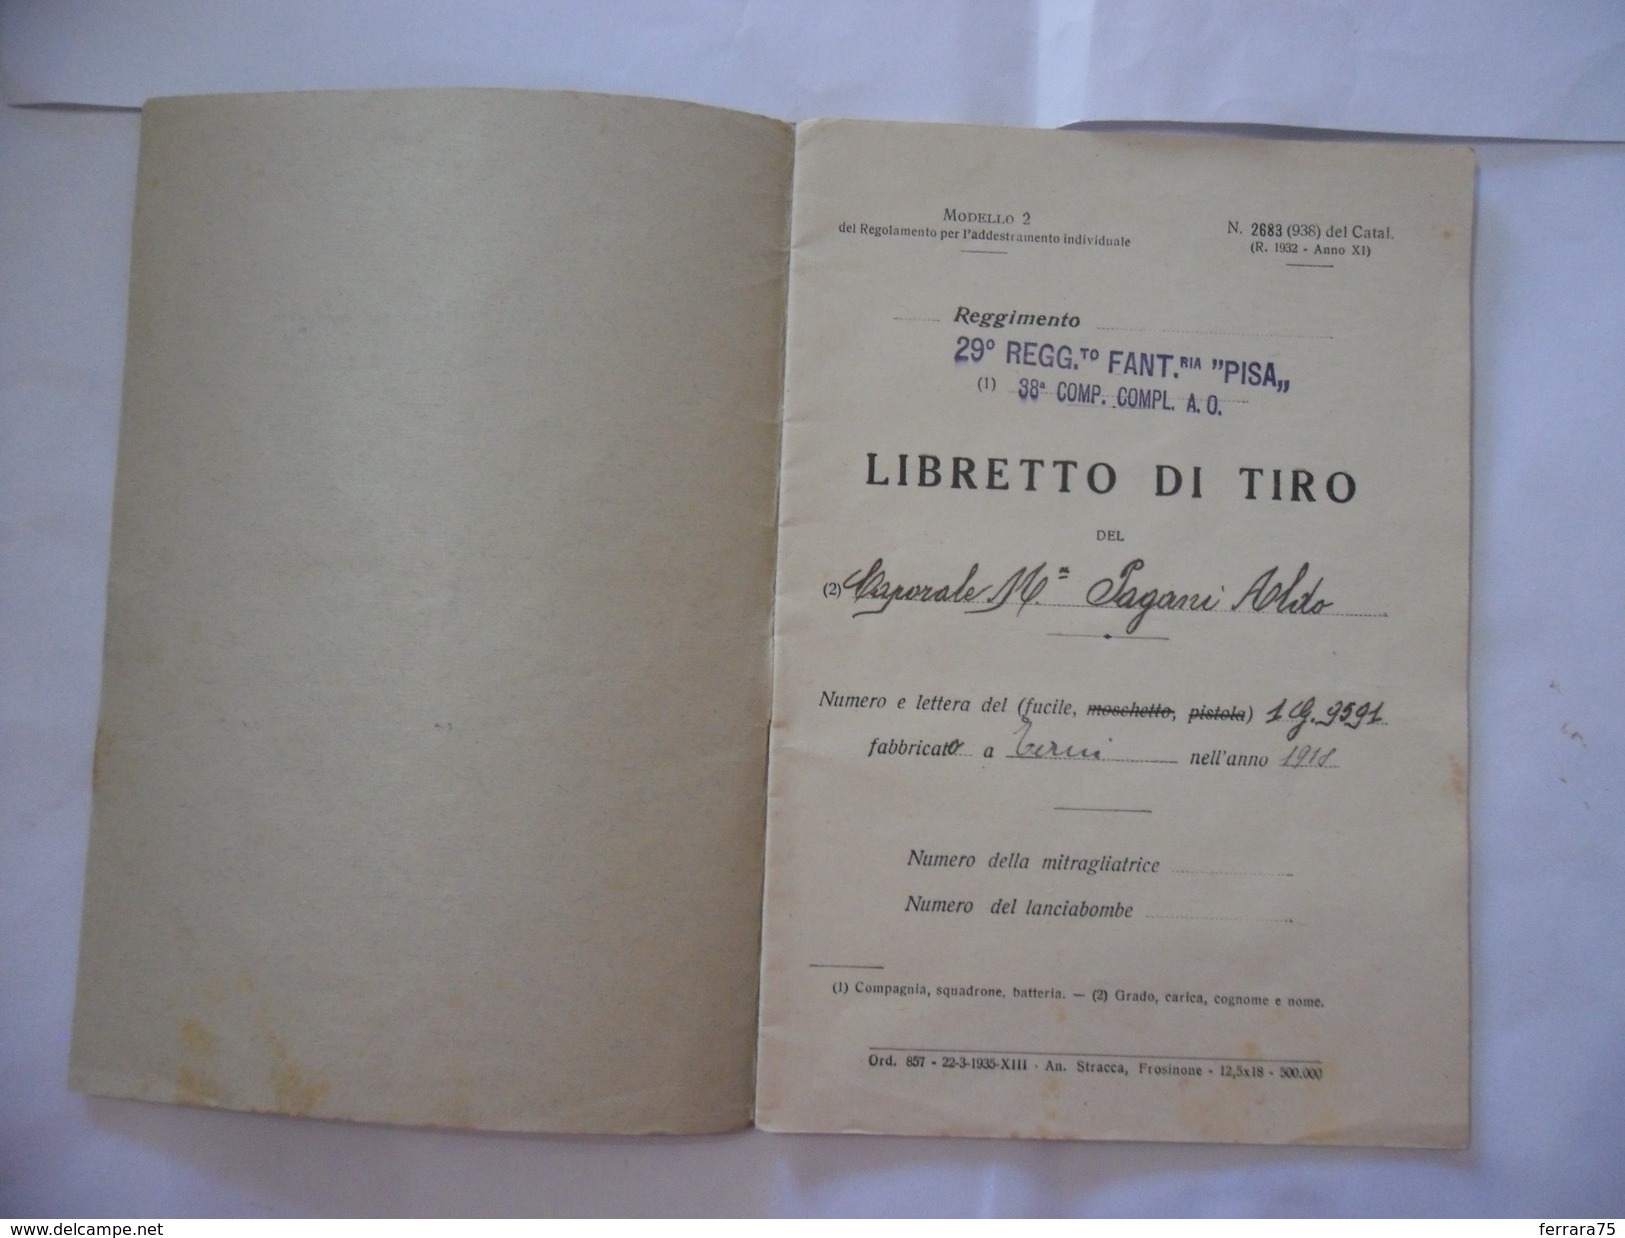 WW2 LIBRETTO DI TIRO 29°REGGIMENTO FANTERIA PISA FRONTE DEL PIAVE A.O. 1936. - Italienisch